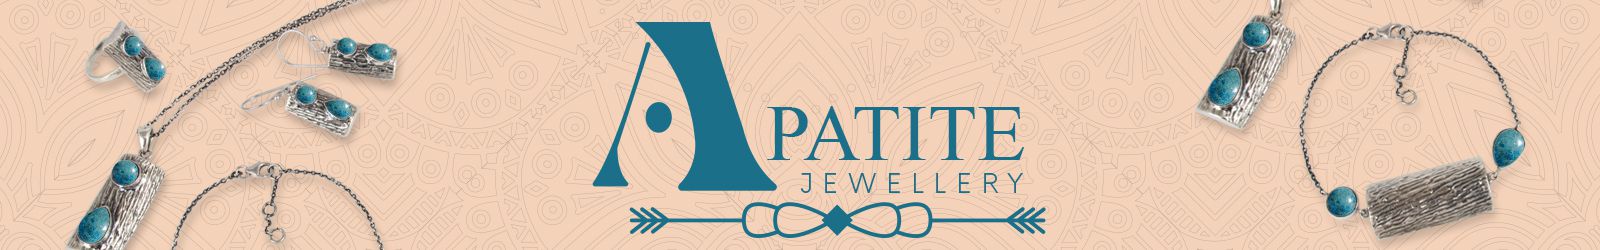 Silver Apatite Jasper Matrix Jewelry Wholesale Supplier